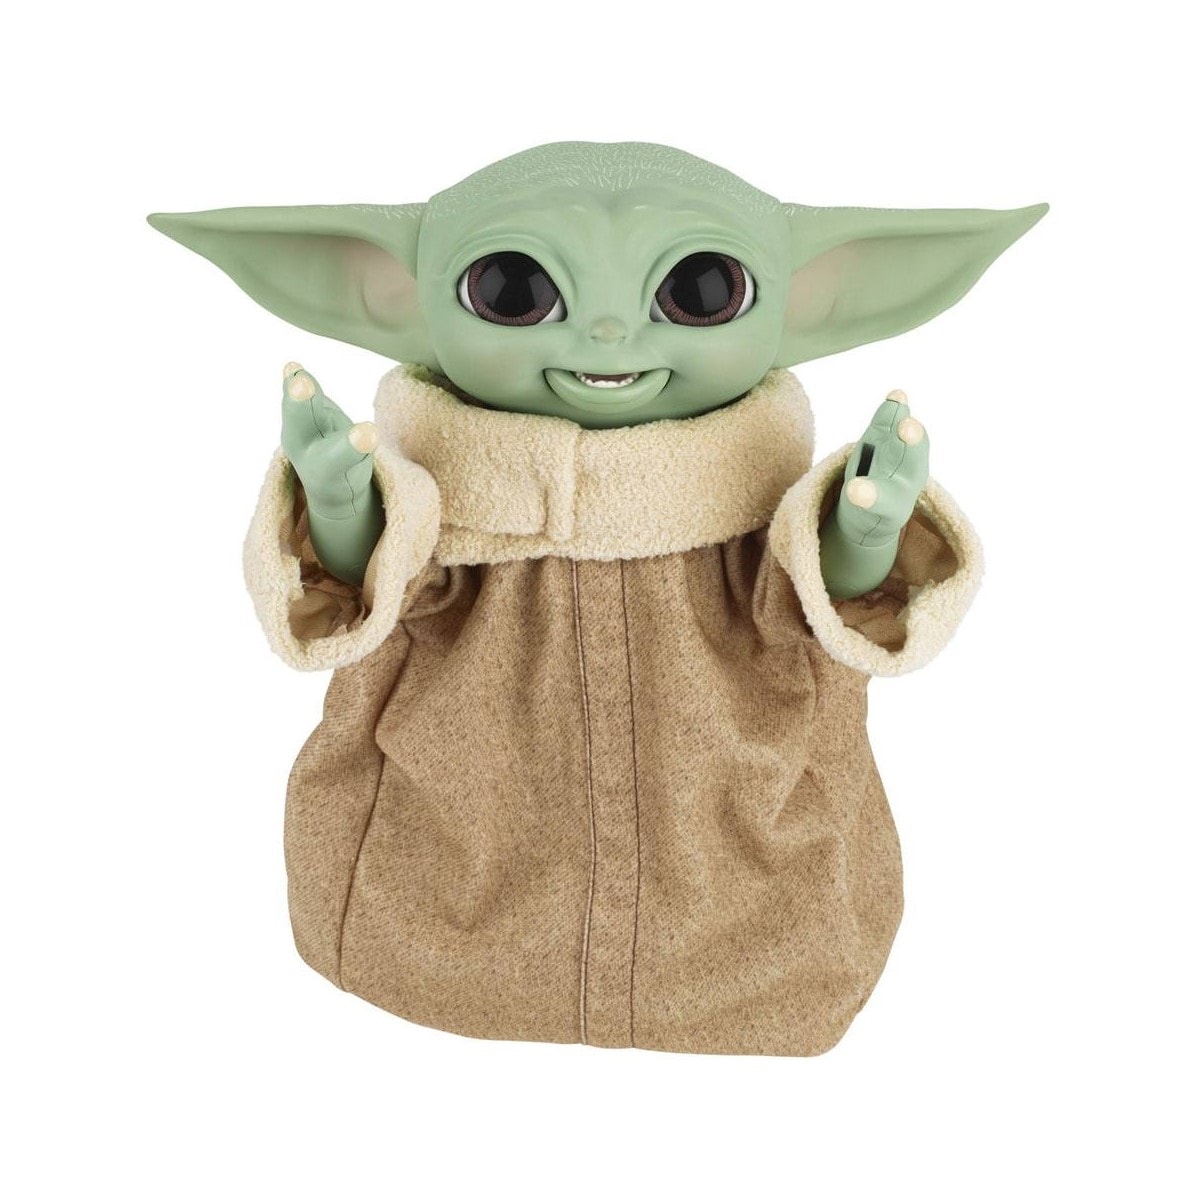 Jouets bébé Yoda : les meilleurs modèles pour les fans de L'Enfant